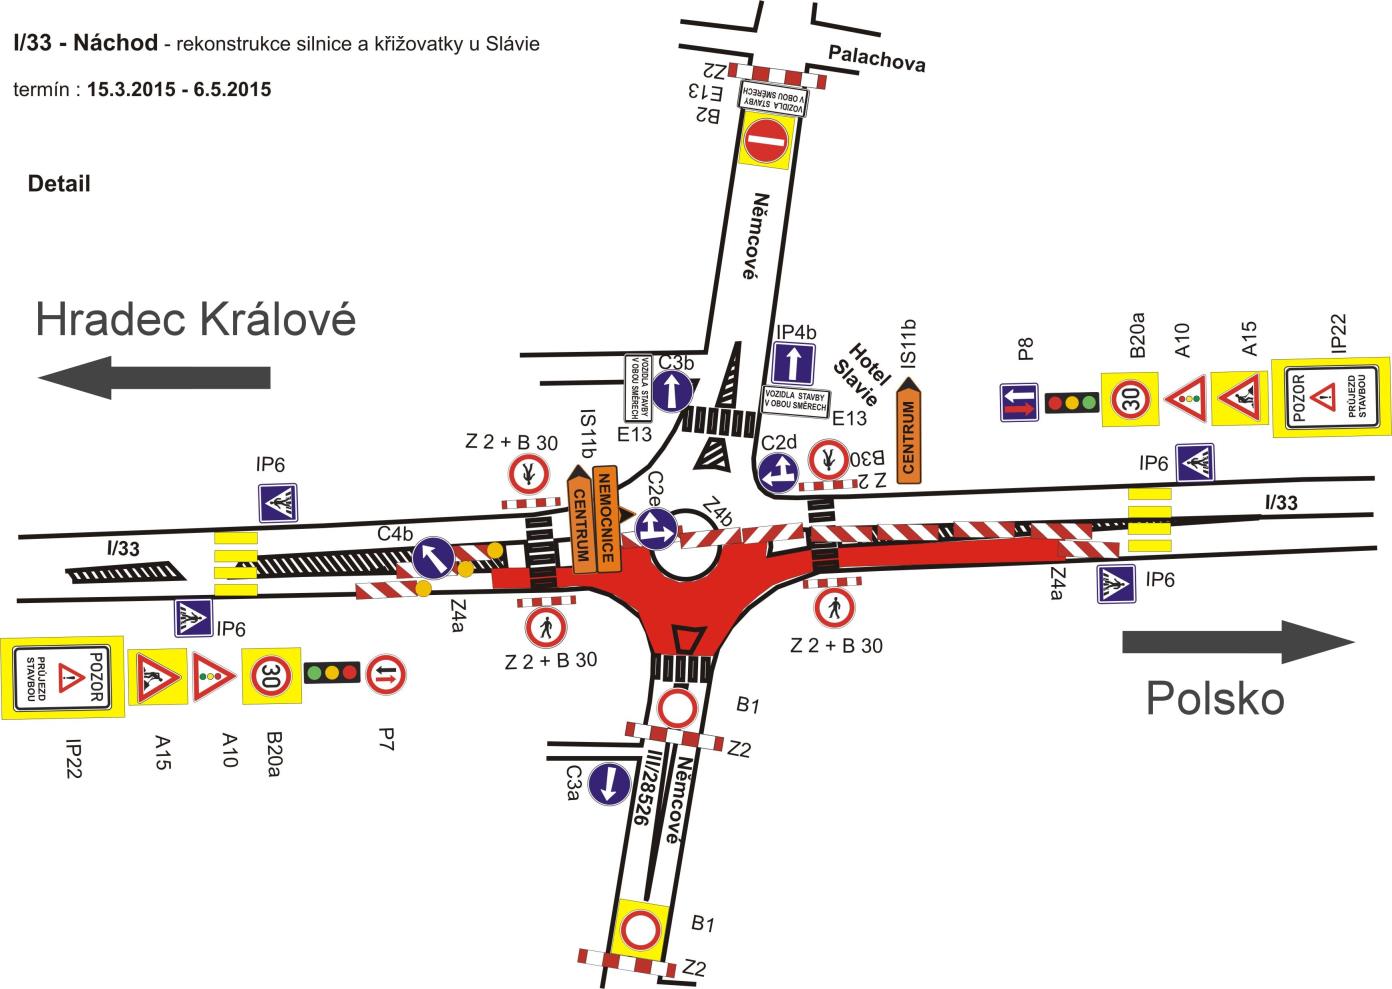 Rekonstrukce okružní křižovatky u Slávie v Náchodě 15. 3. - 15. 6. 2015 Dlouho připravovaná rekonstrukce okružní křižovatky u Slávie v Náchodě bude zahájena 15. března 2015.